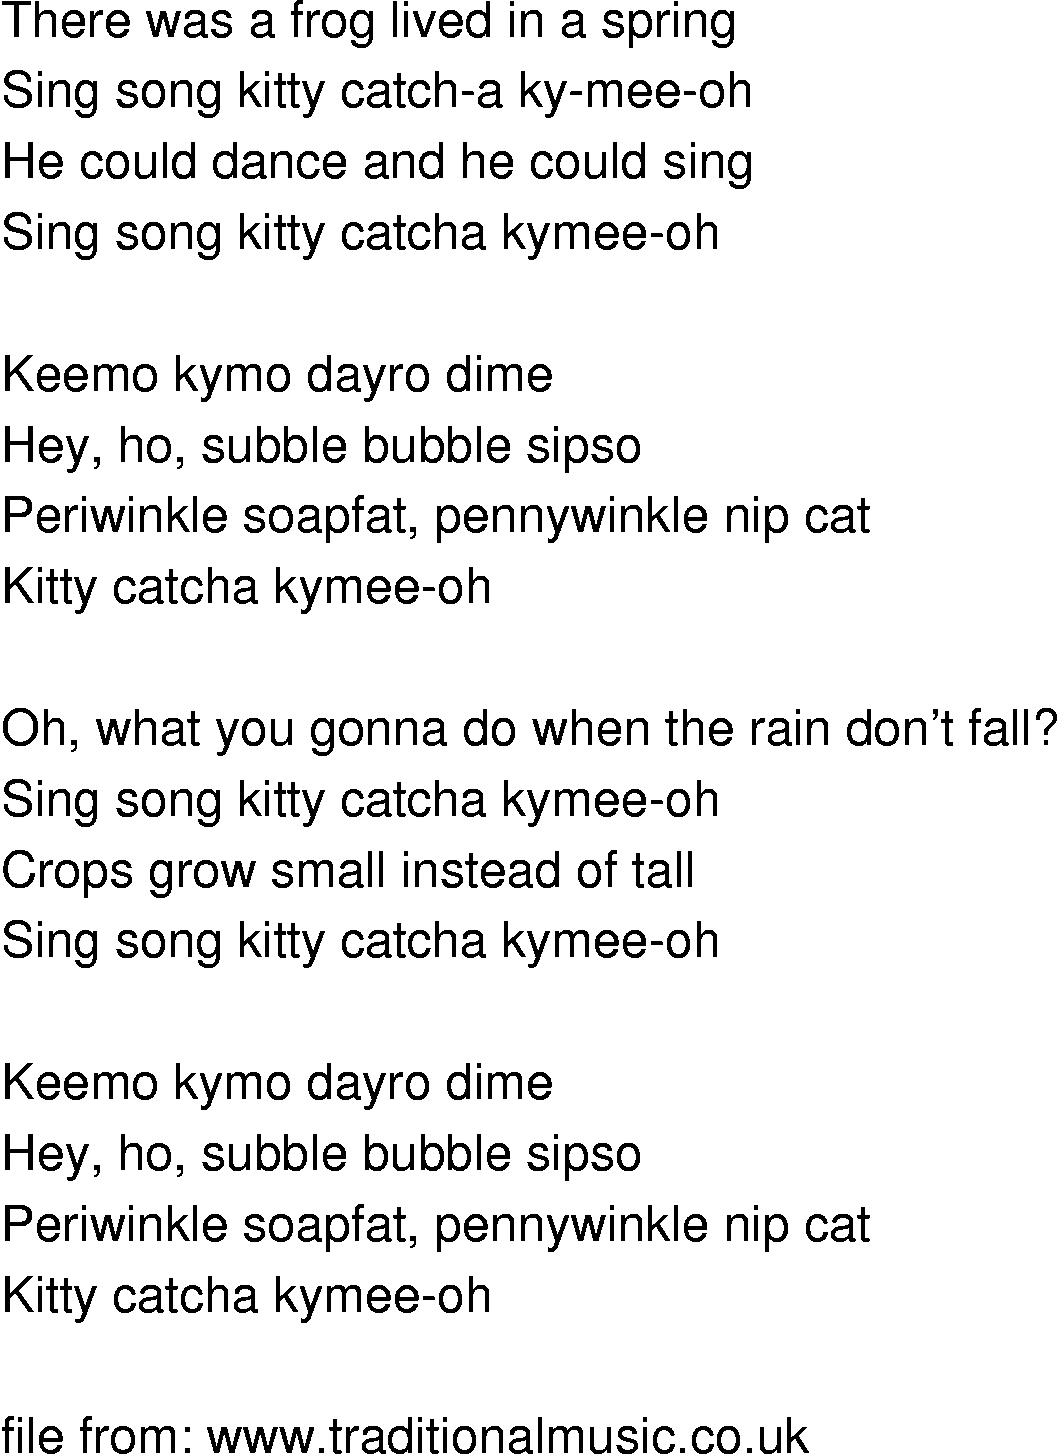 Old-Time (oldtimey) Song Lyrics - kemo kimo